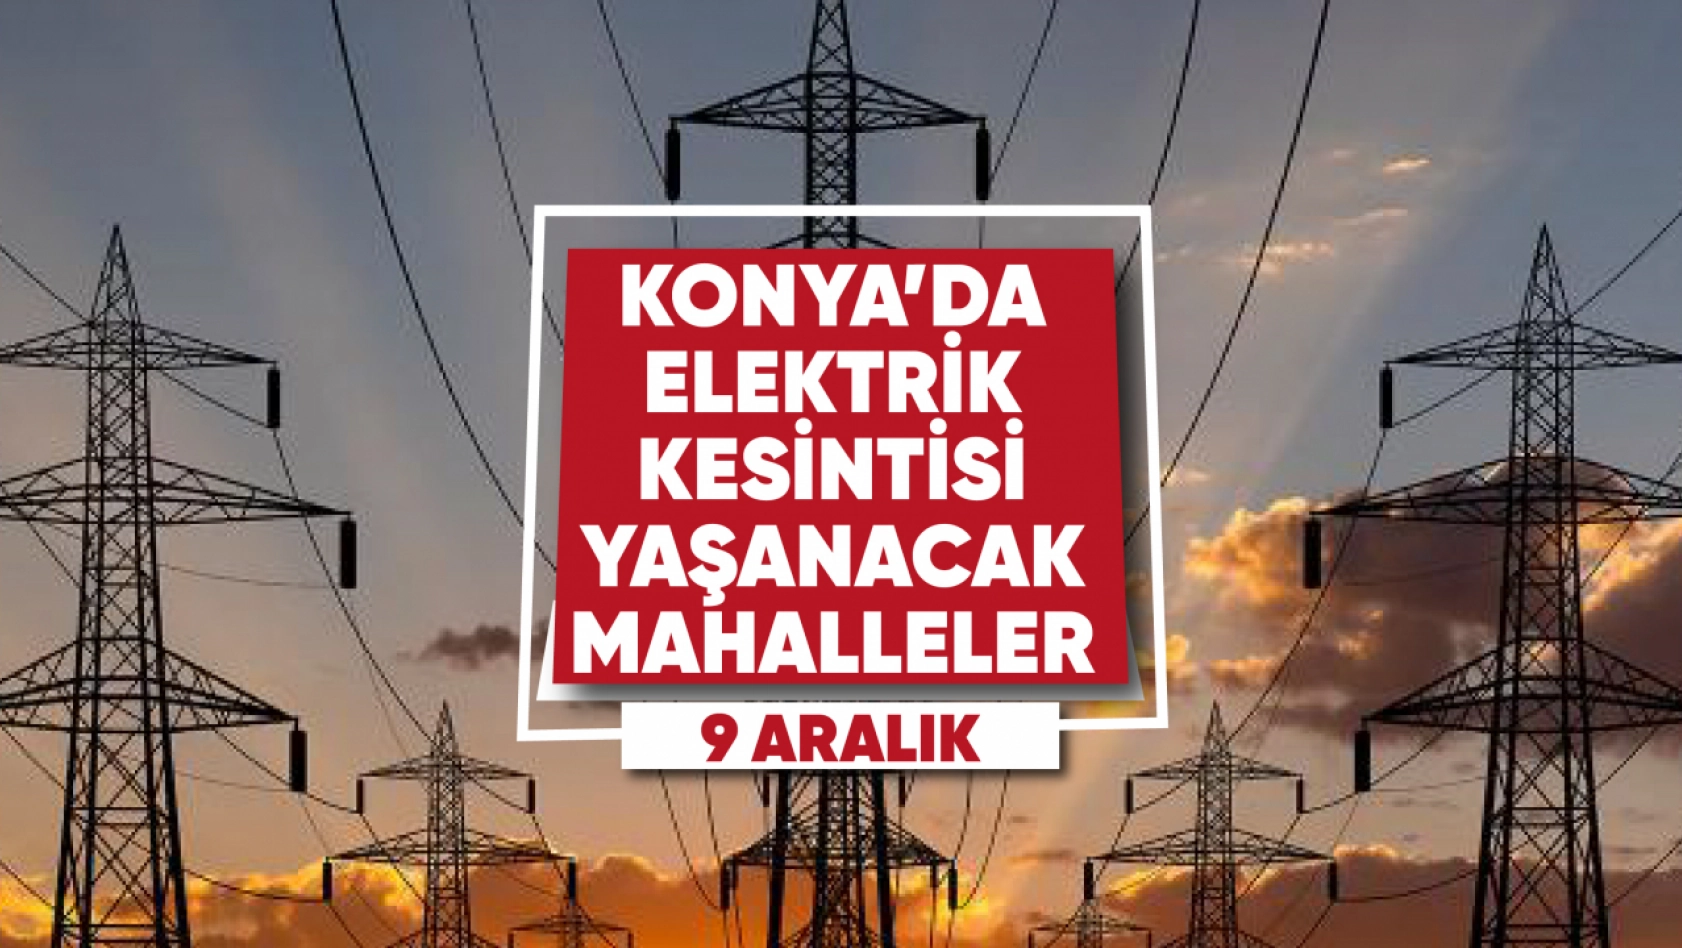 Konya'da elektrik kesintisi yaşanacak mahalle ve sokaklar (9 Aralık)